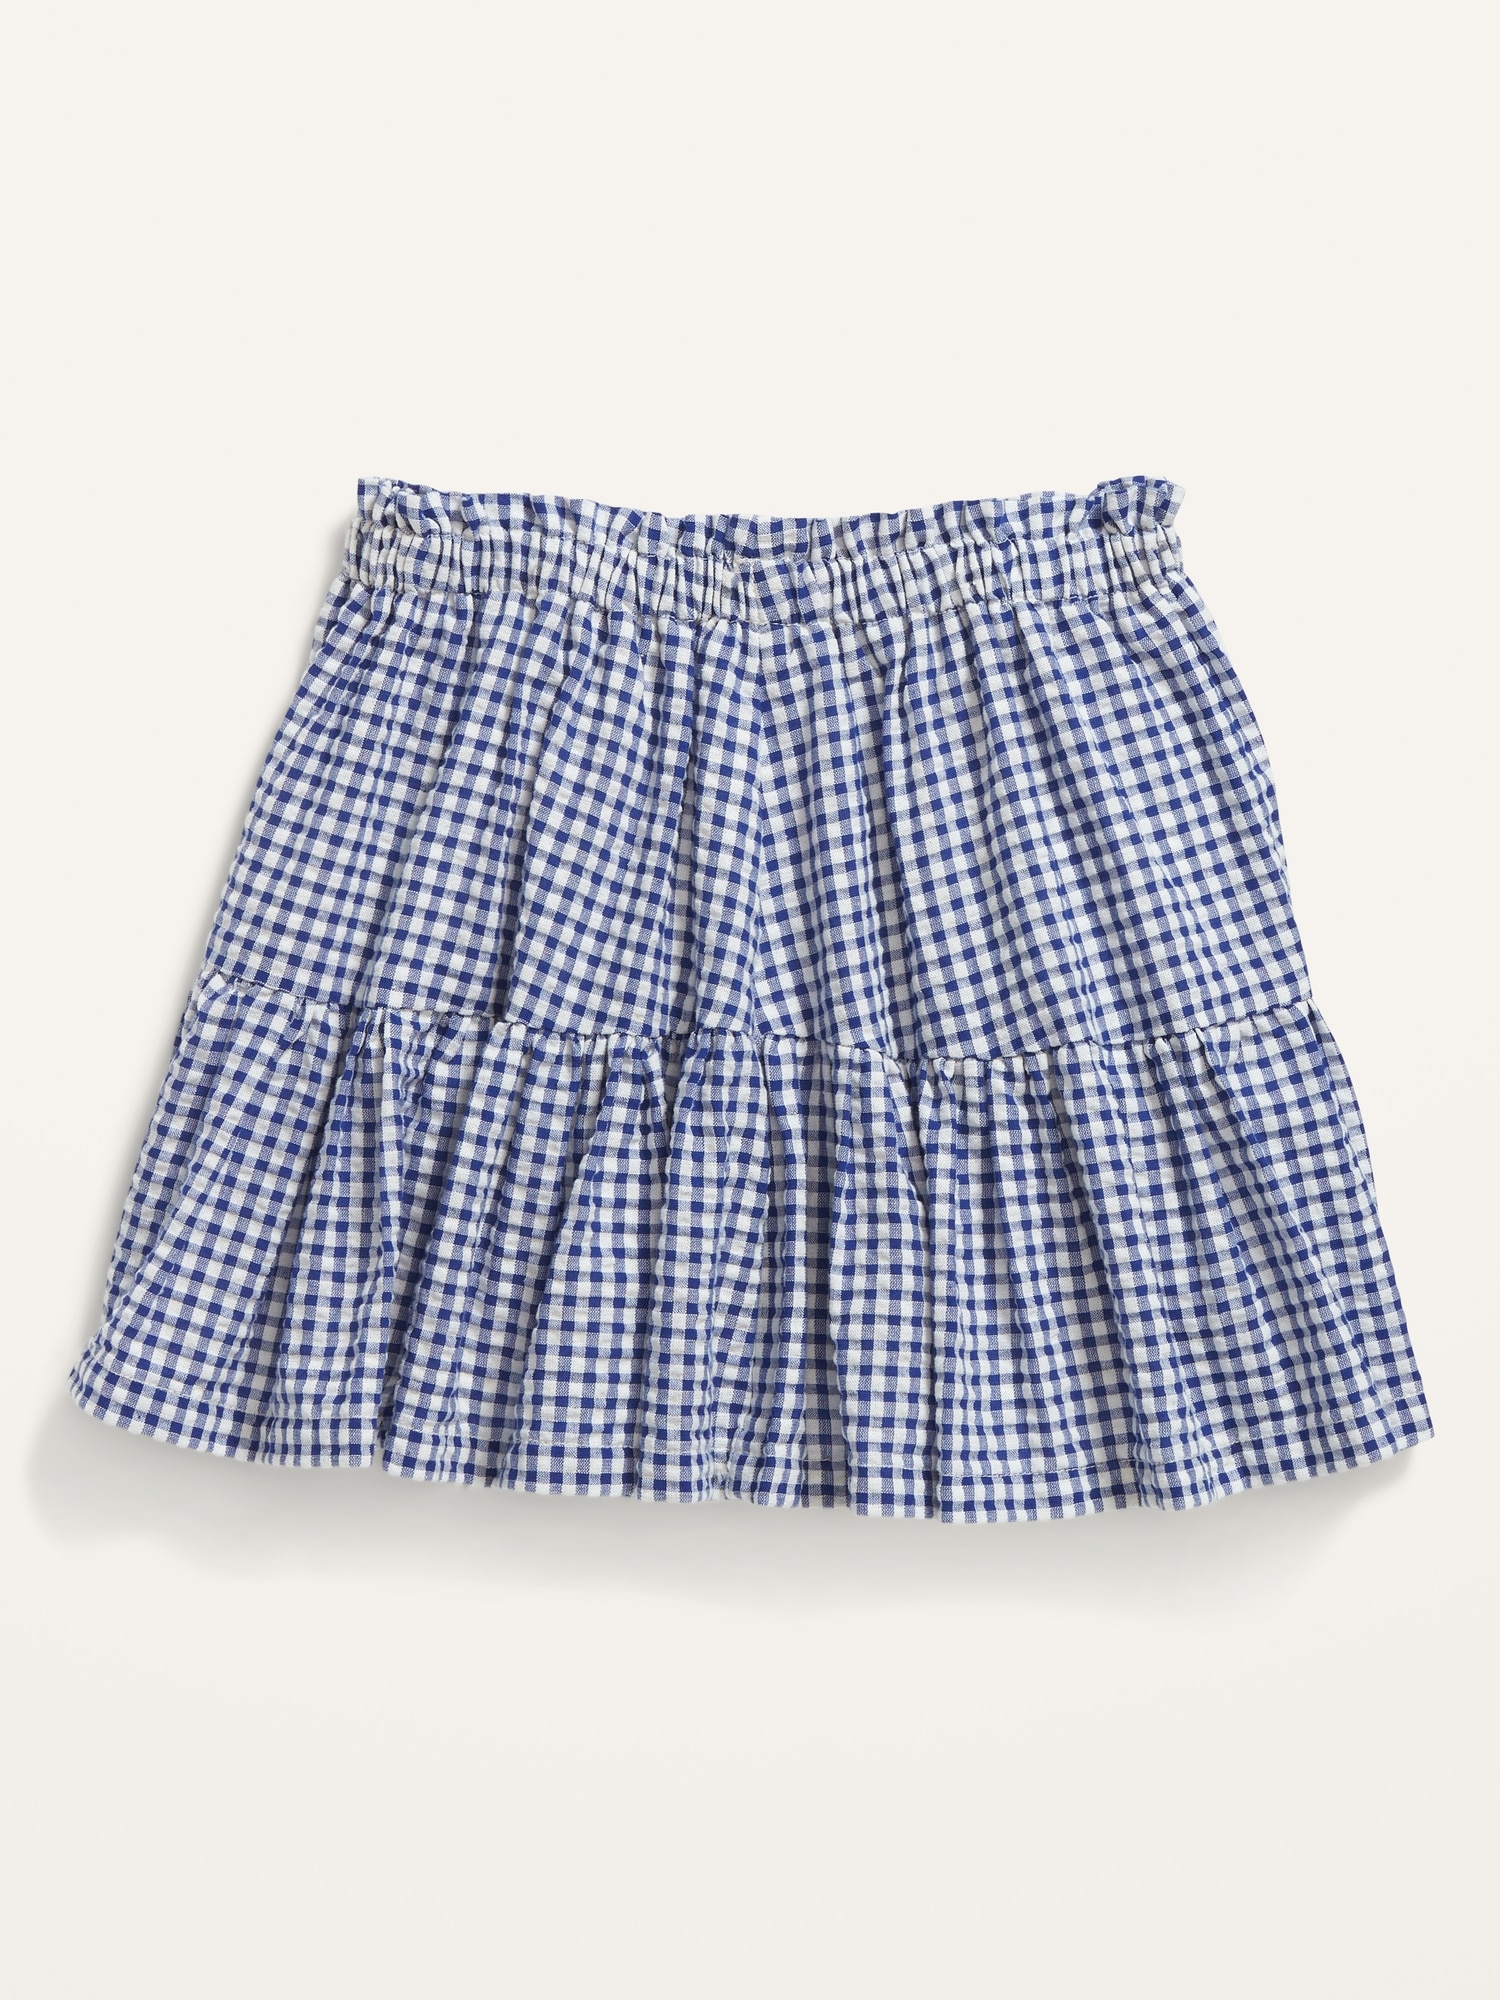 Gingham Seersucker Swing Skirt for Toddler Girls | Old Navy